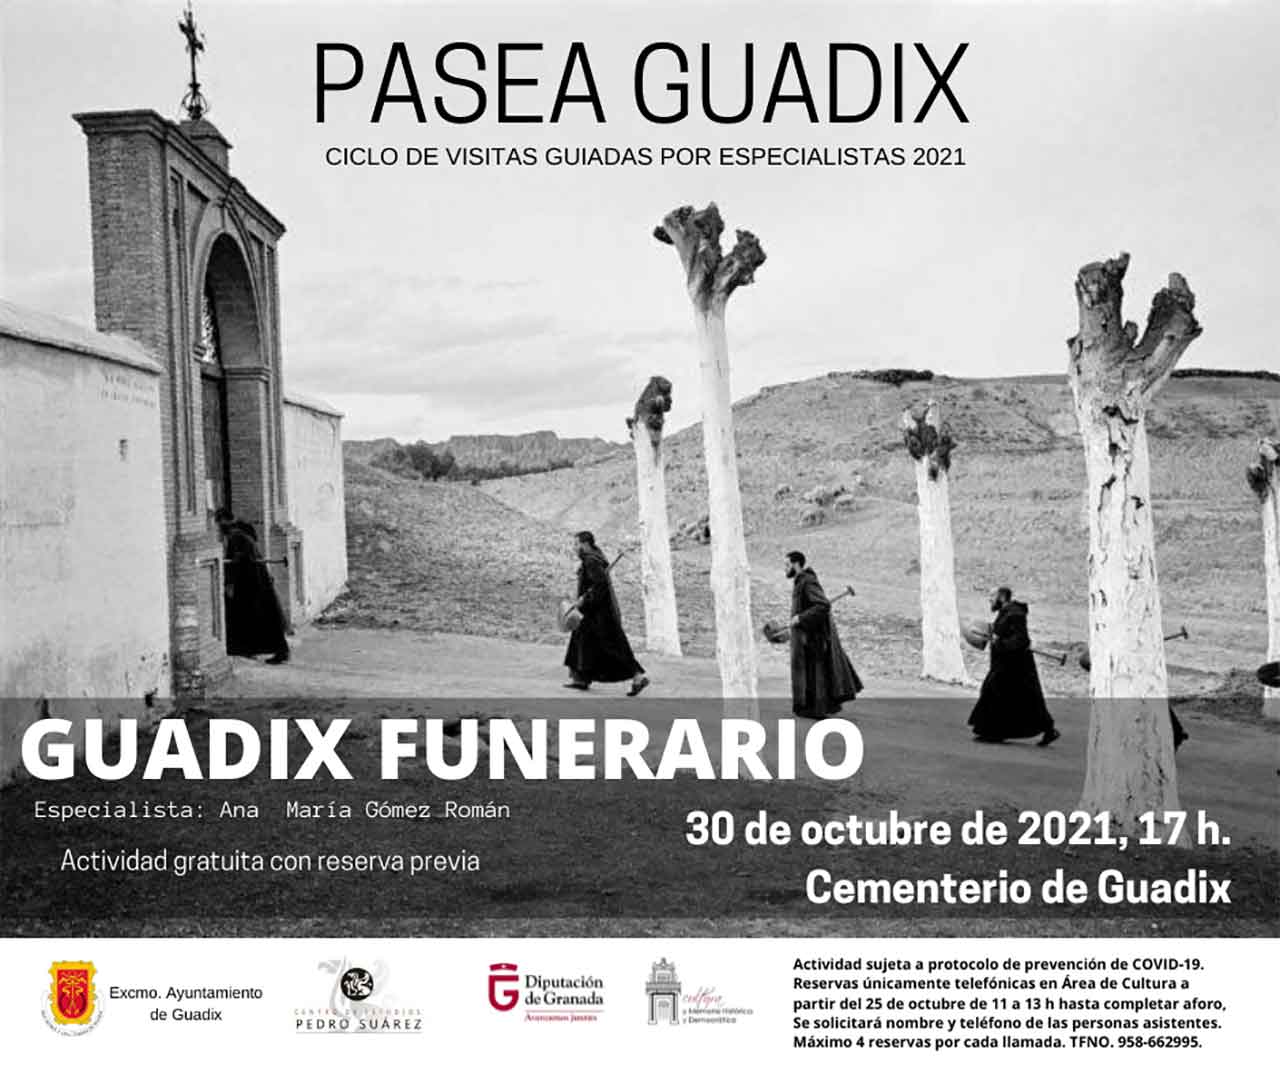 Guadix funerario